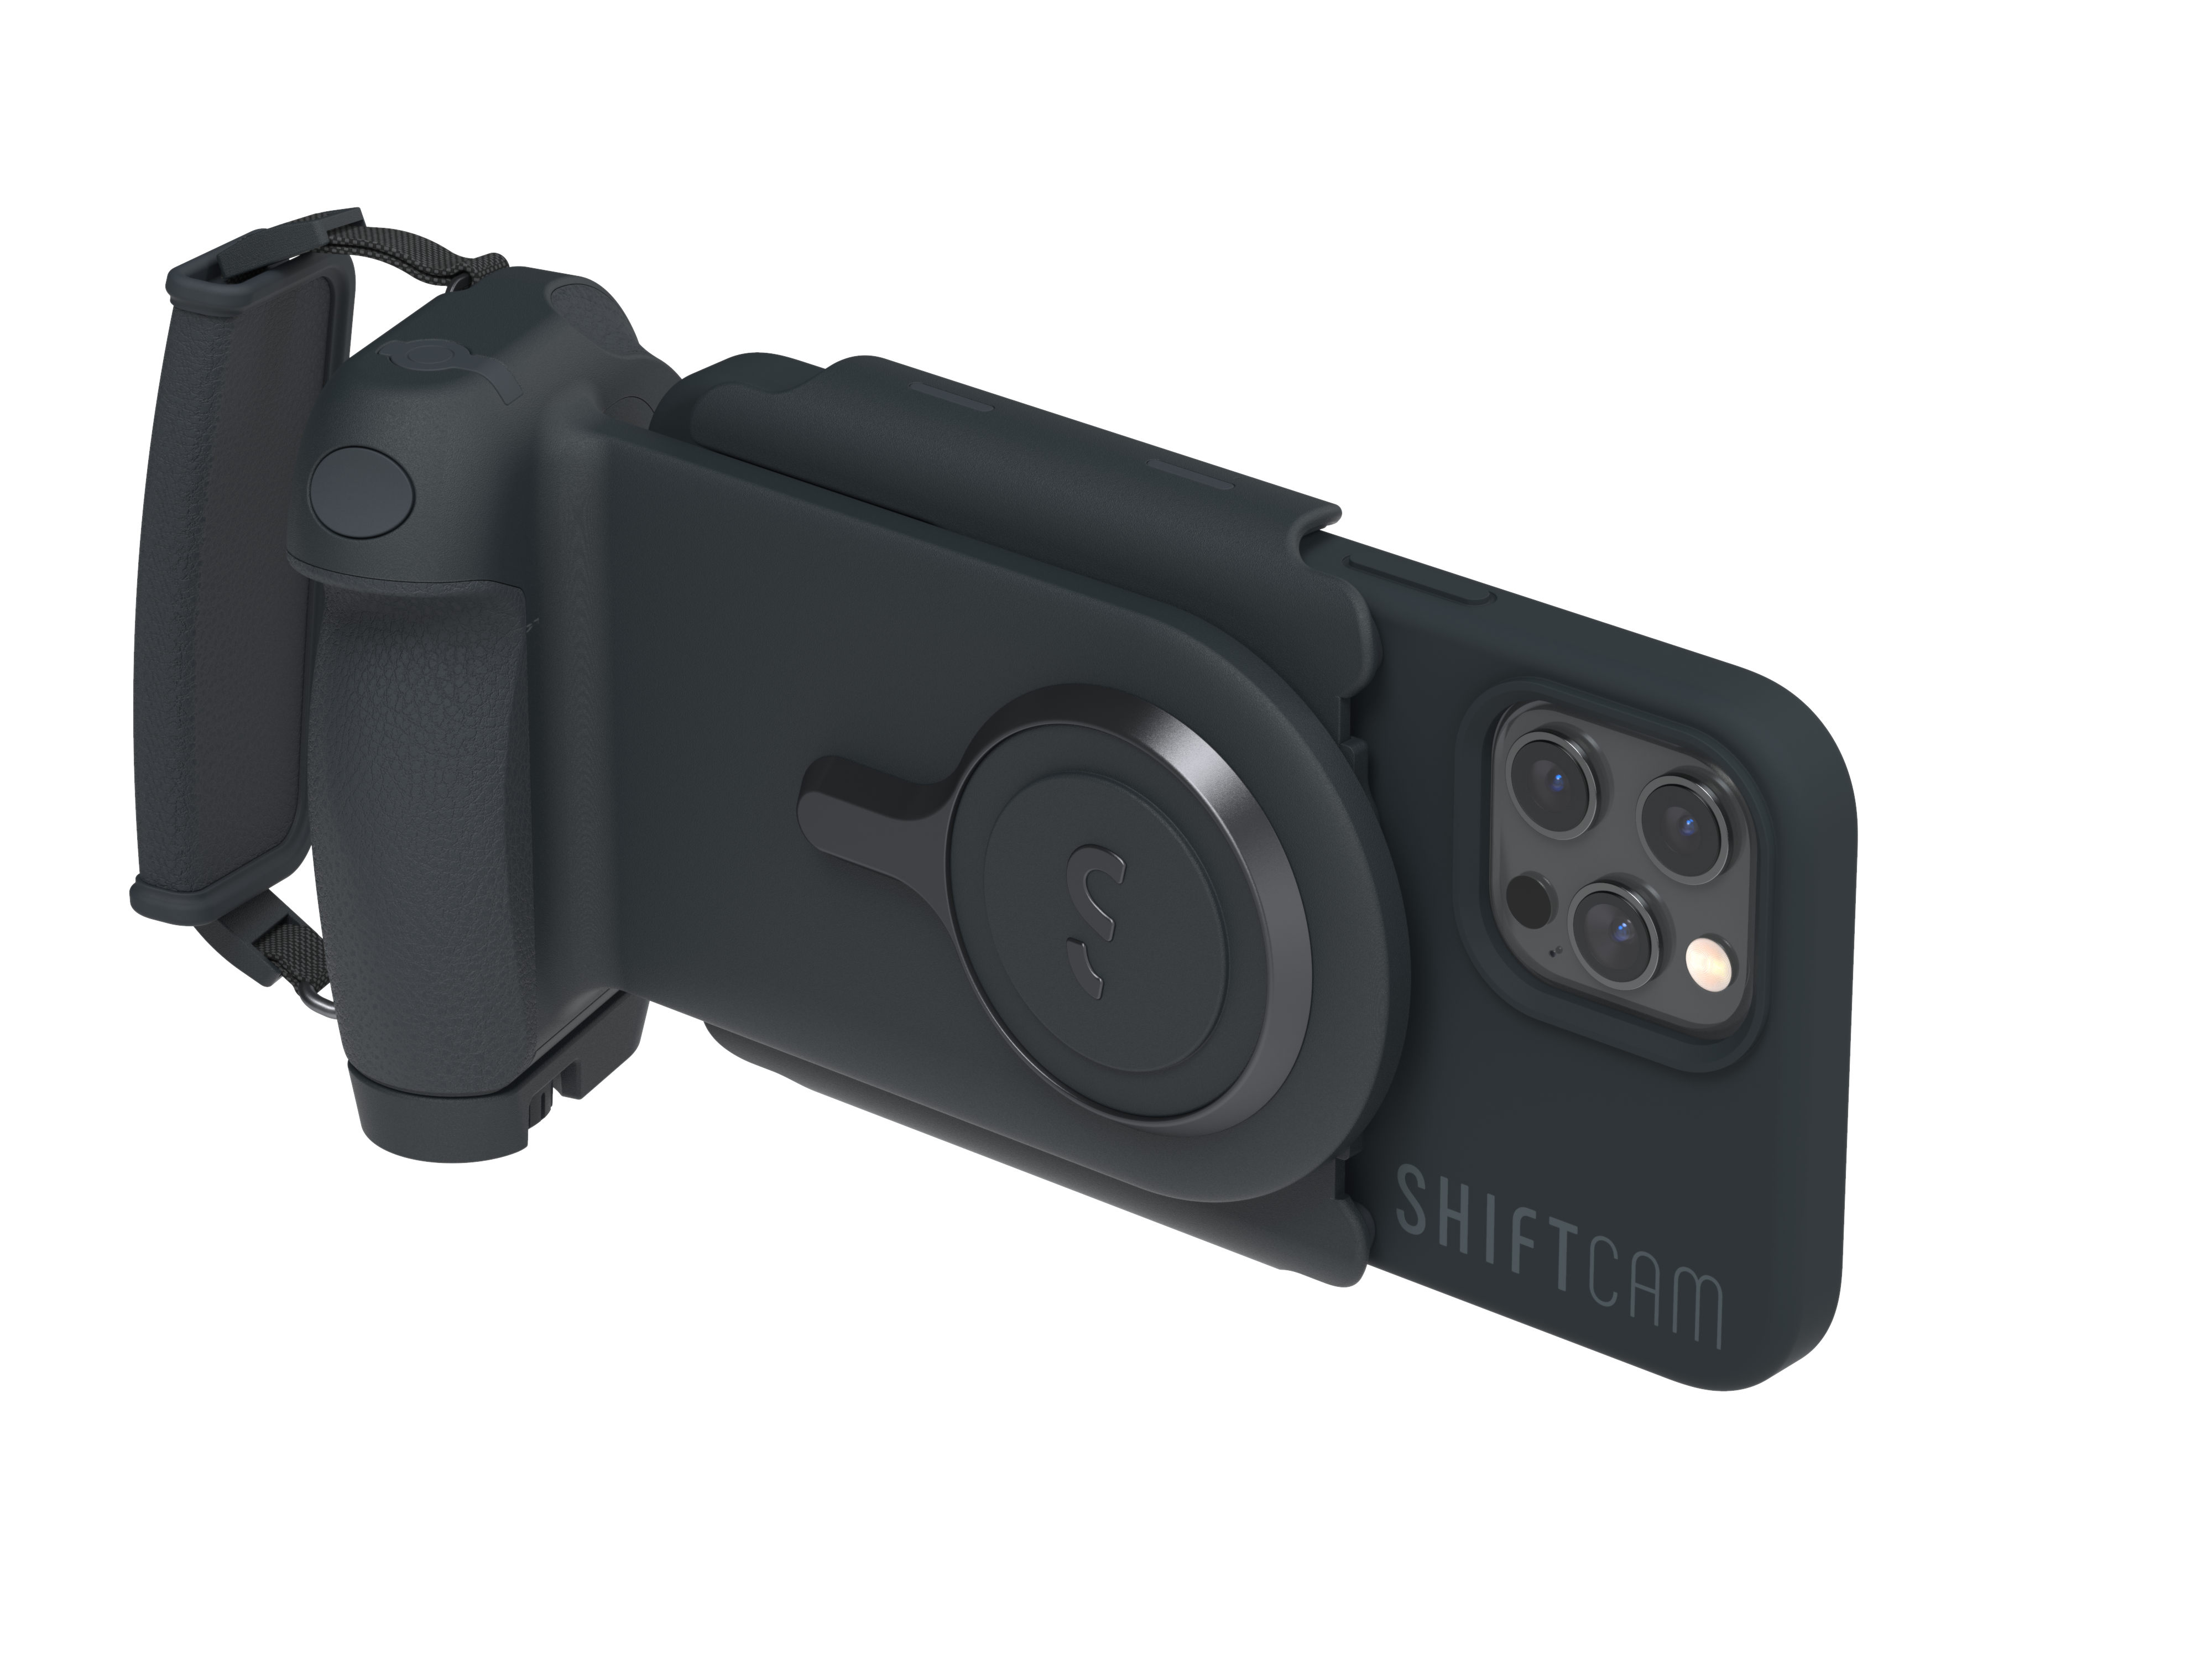 SHIFTCAM ProGrip Starter Charcoal, Smartphone - Kit alle Charcoal, Kameragriff, für Smartphones passend